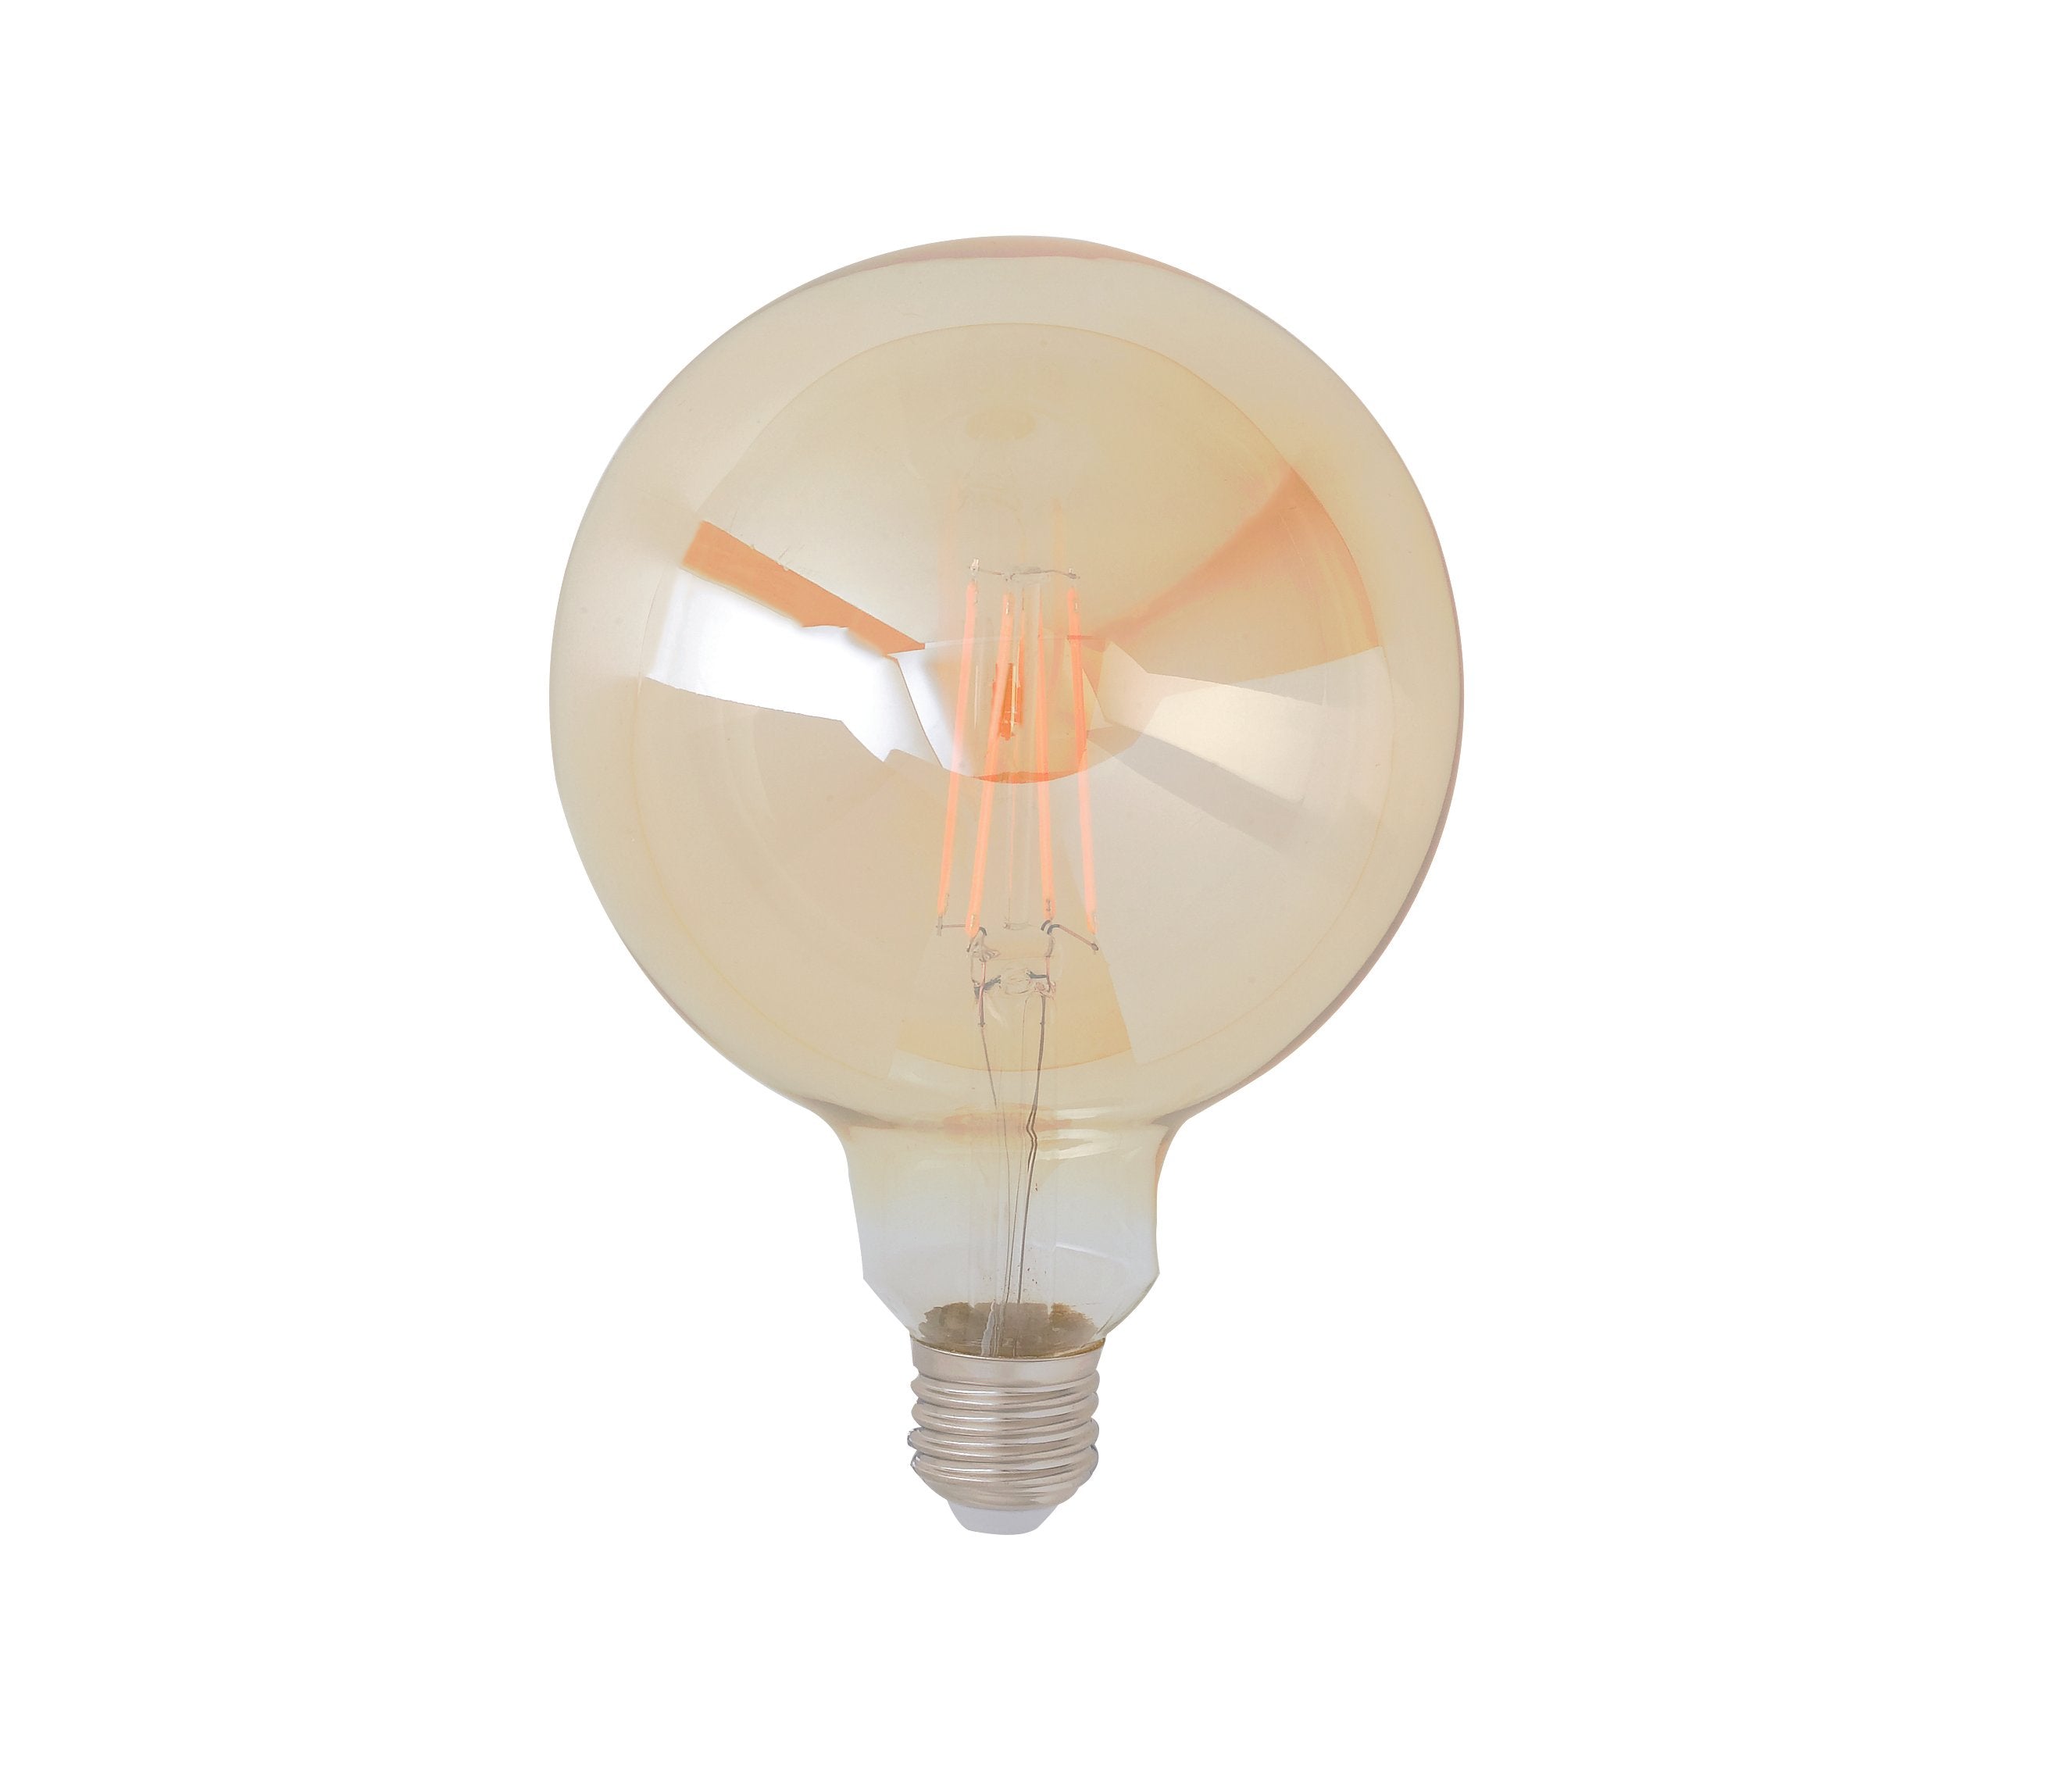 Ampoule LED Globe en verre ambré 8W avec douille E27, lumière chaude 2500K